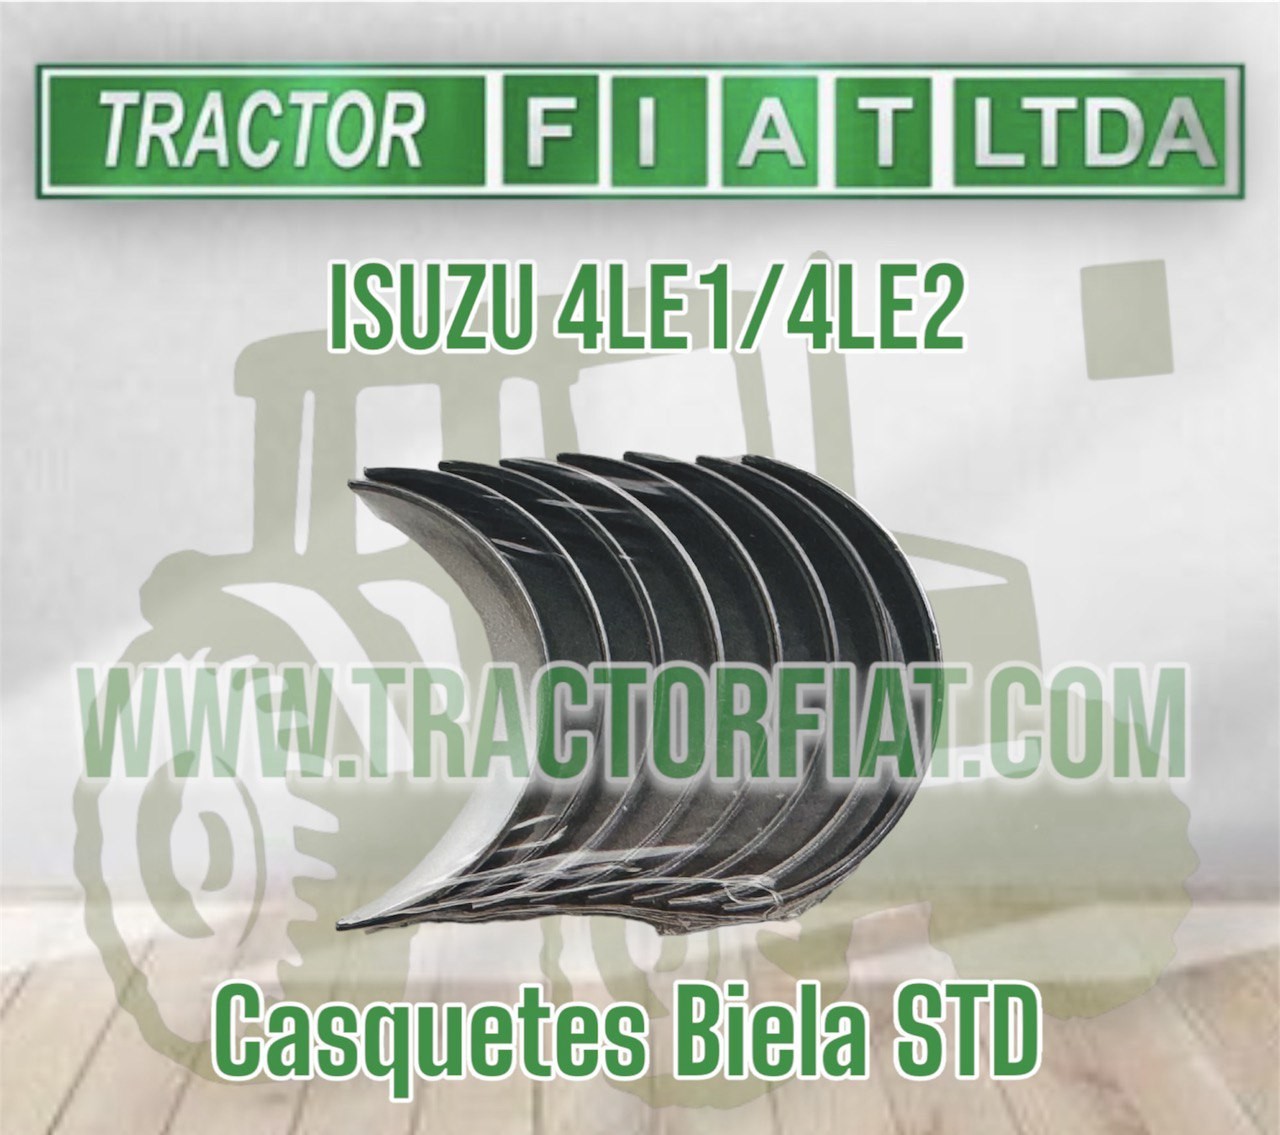 CASQUETE BIELA STD - MOTOR ISUZU 4LE1/4LE2